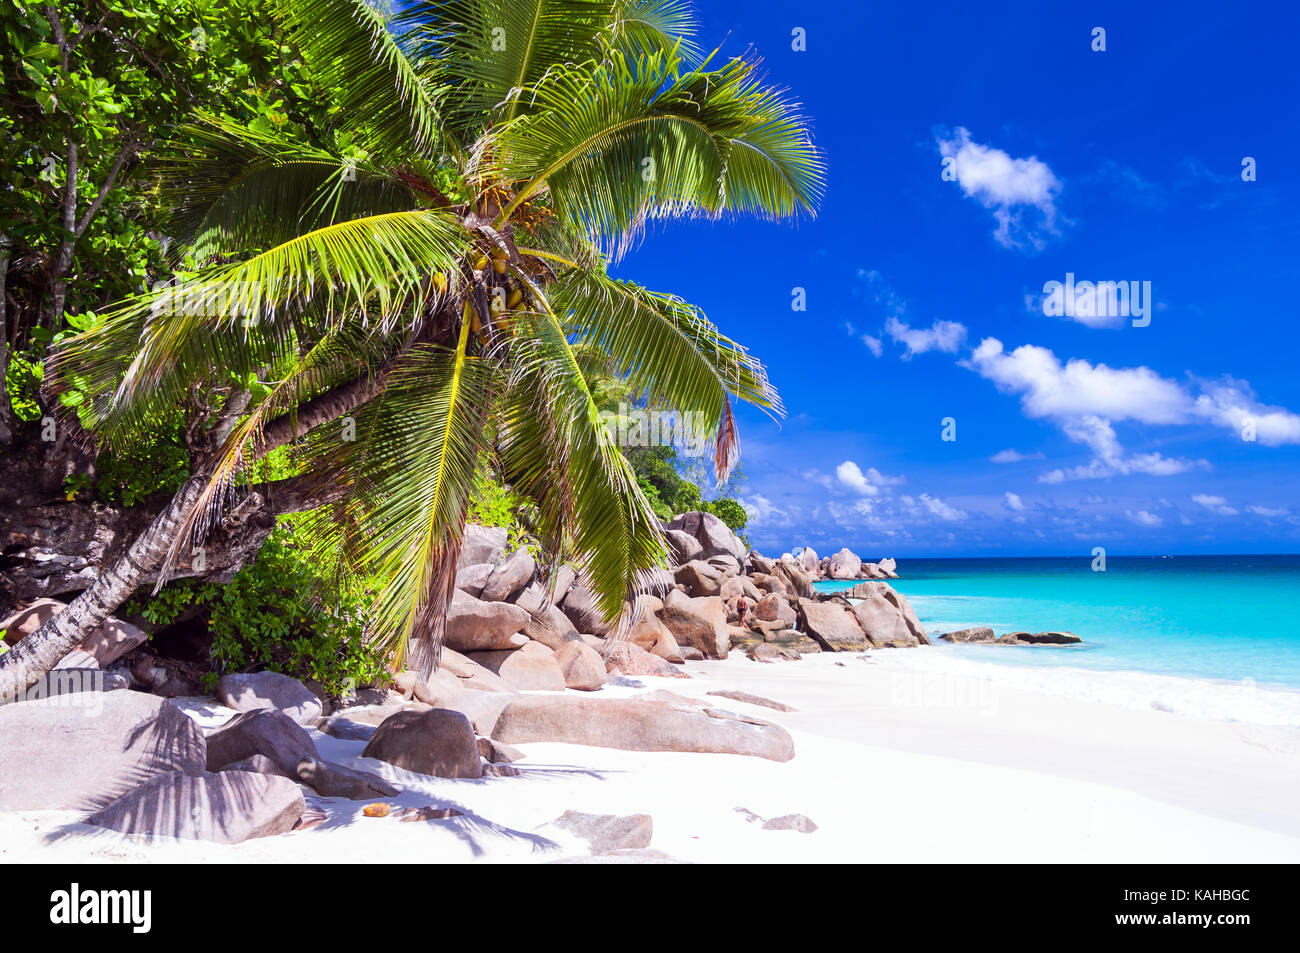 La mer d'azur et de sable blanc dans un paradis tropical, l'île des Seychelles. Banque D'Images